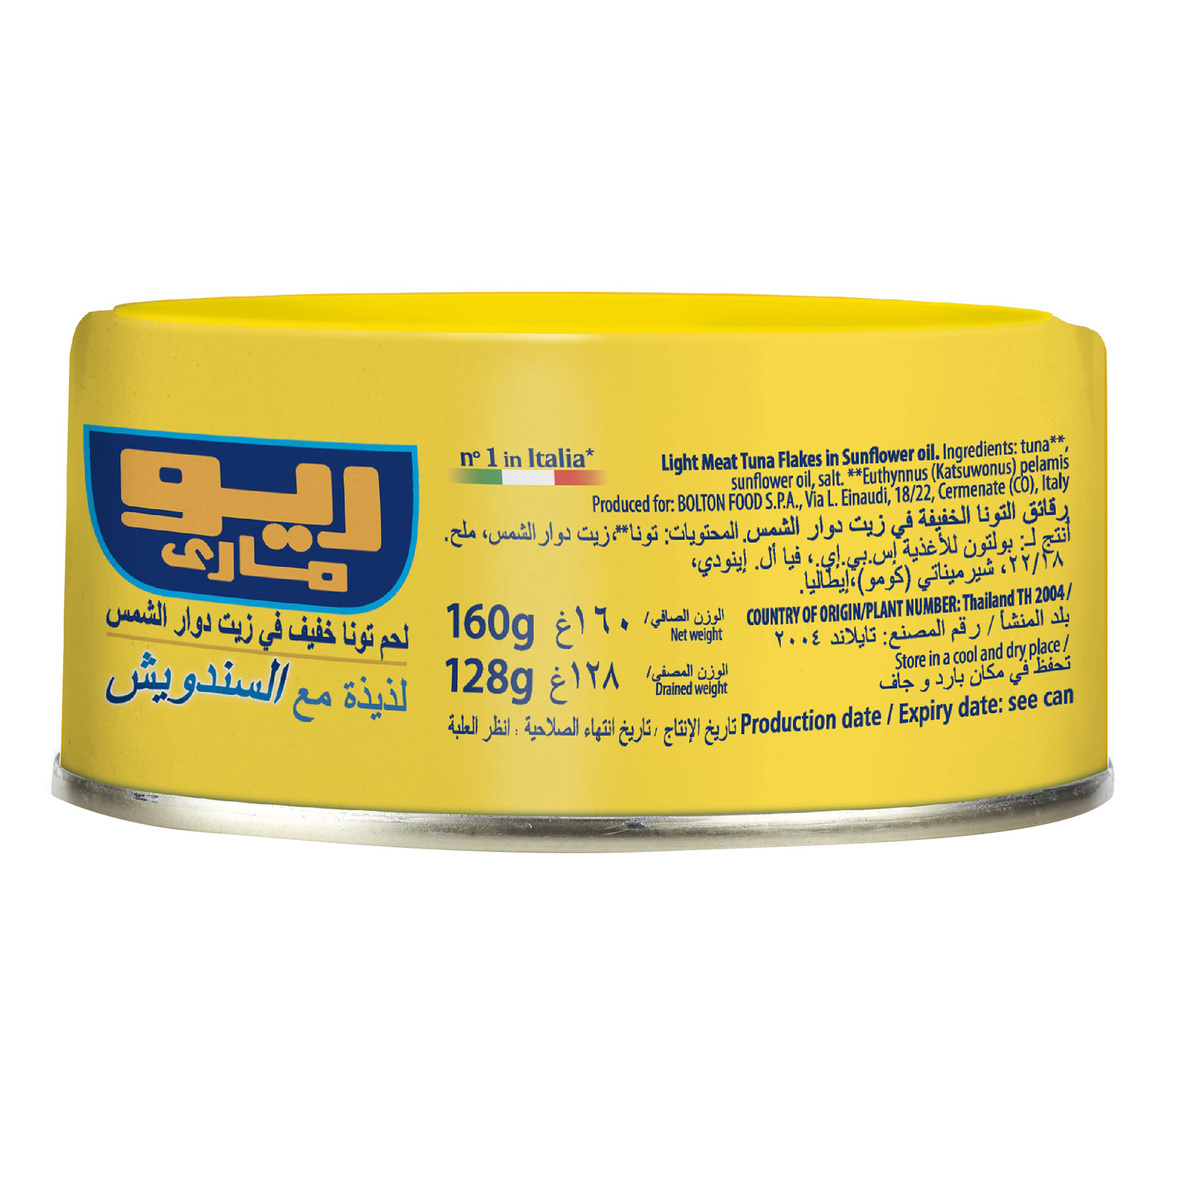 Rio Mare Light Meat Tuna in Sunflower Oil 160 g